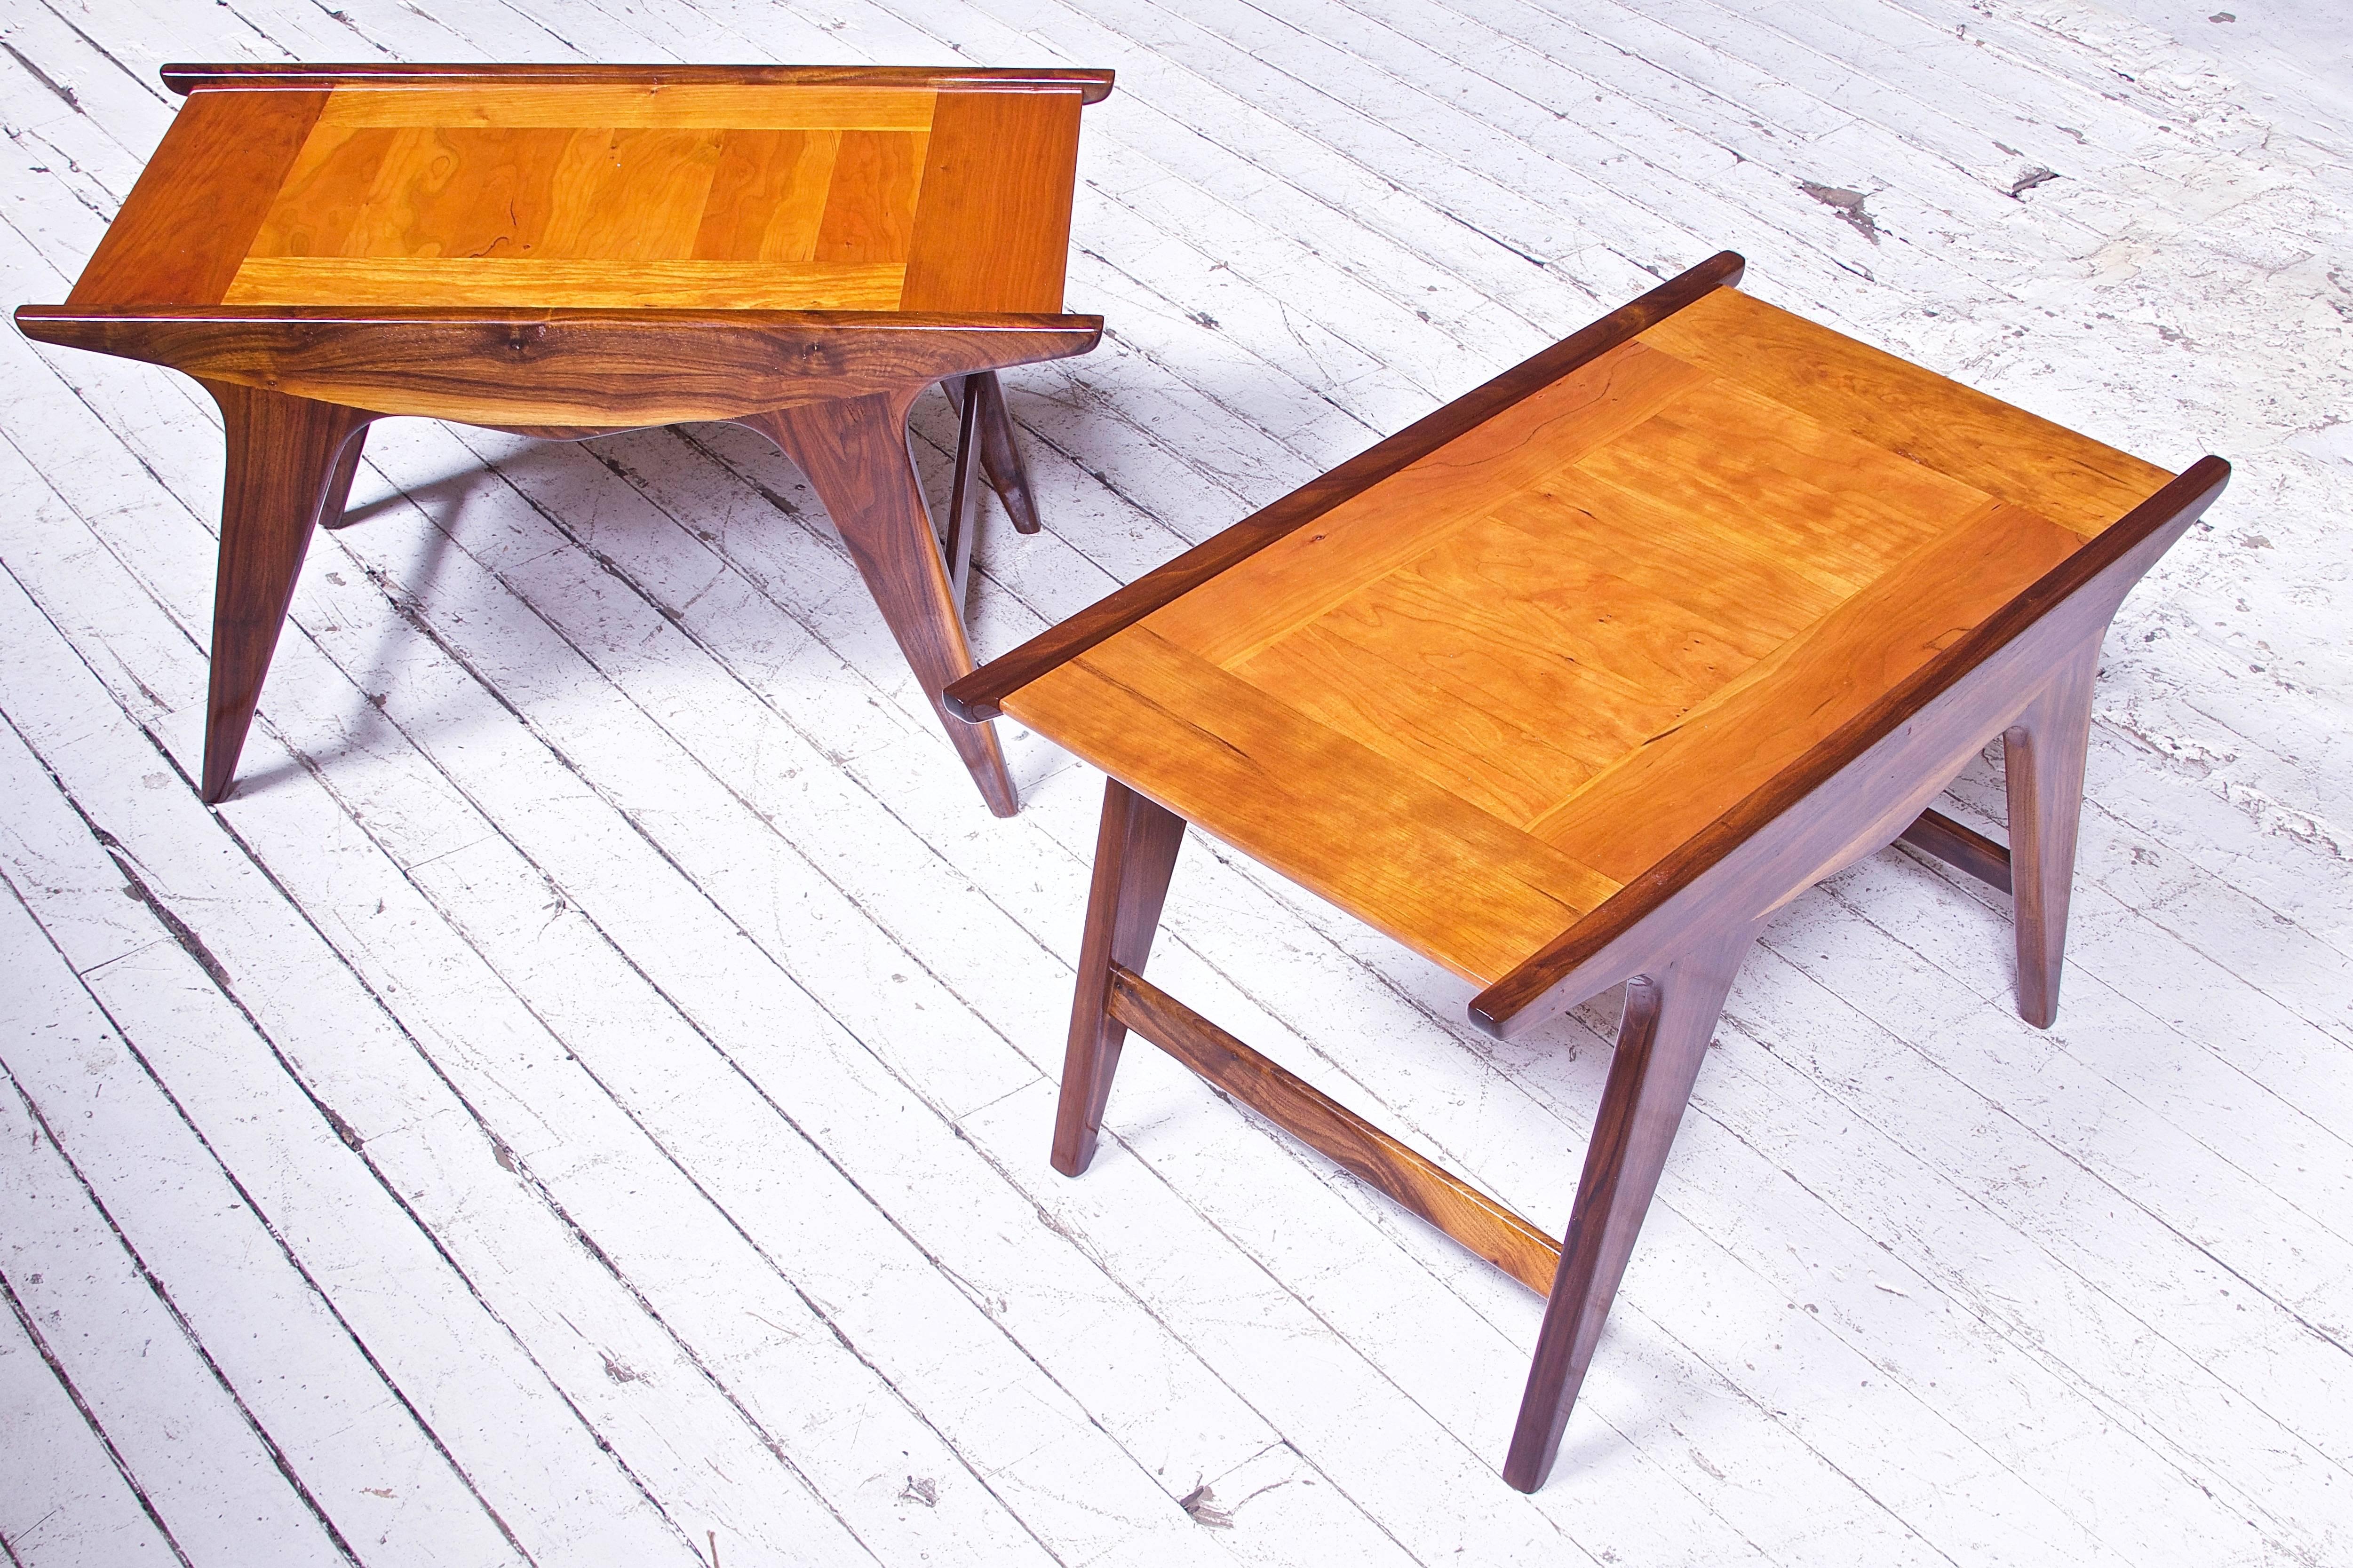 Ein Paar Tavolinetto-Tische in limitierter Auflage aus Nussbaum und Kirsche, entworfen von Angelo Montaperto, handgefertigt von Montaperto Studios-2017. Diese besondere Form wurde durch das moderne italienische Design des 20. Jahrhunderts und das